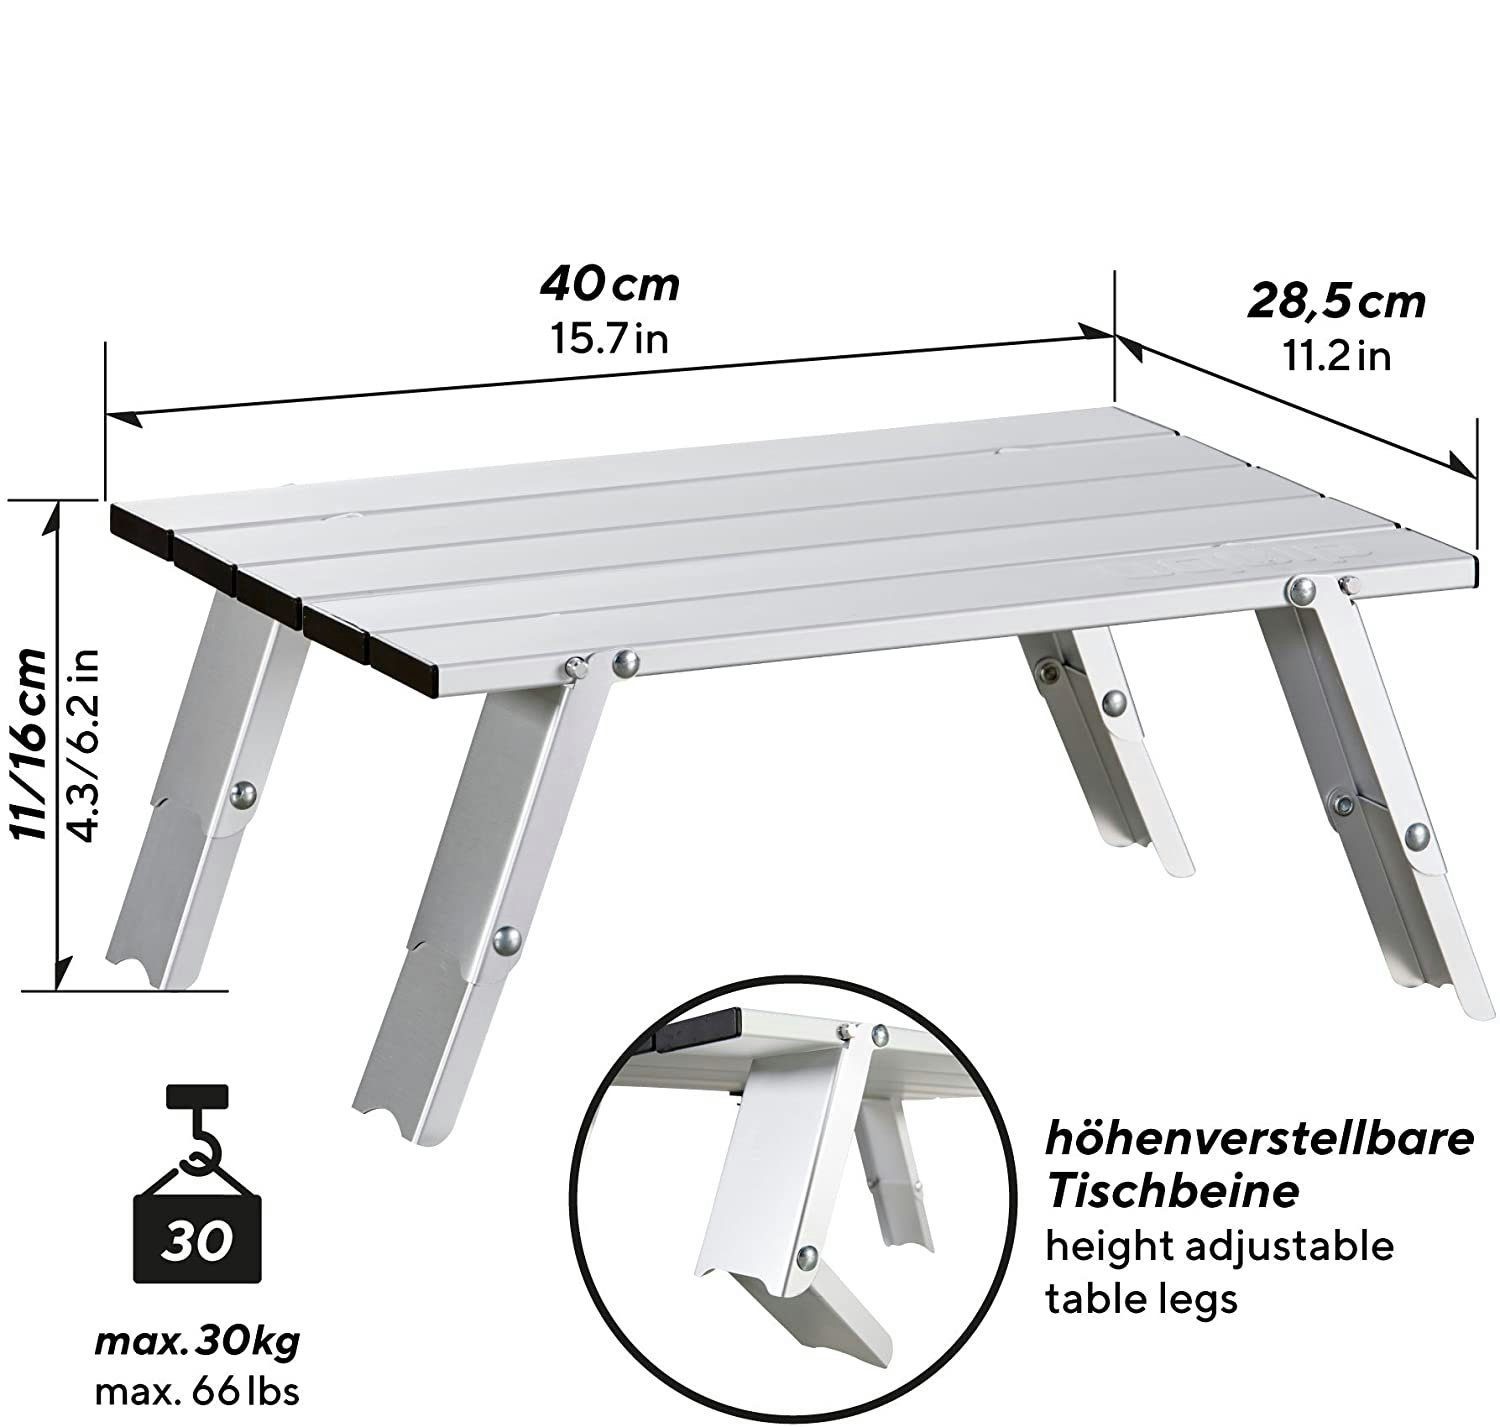 UQUIP Campingtisch Faltbarer Aluminium Tisch Handy - Verstellbar in 2 Höhen  (11/16cm), auch als Kindertisch geeignet, inkl. Packtasche